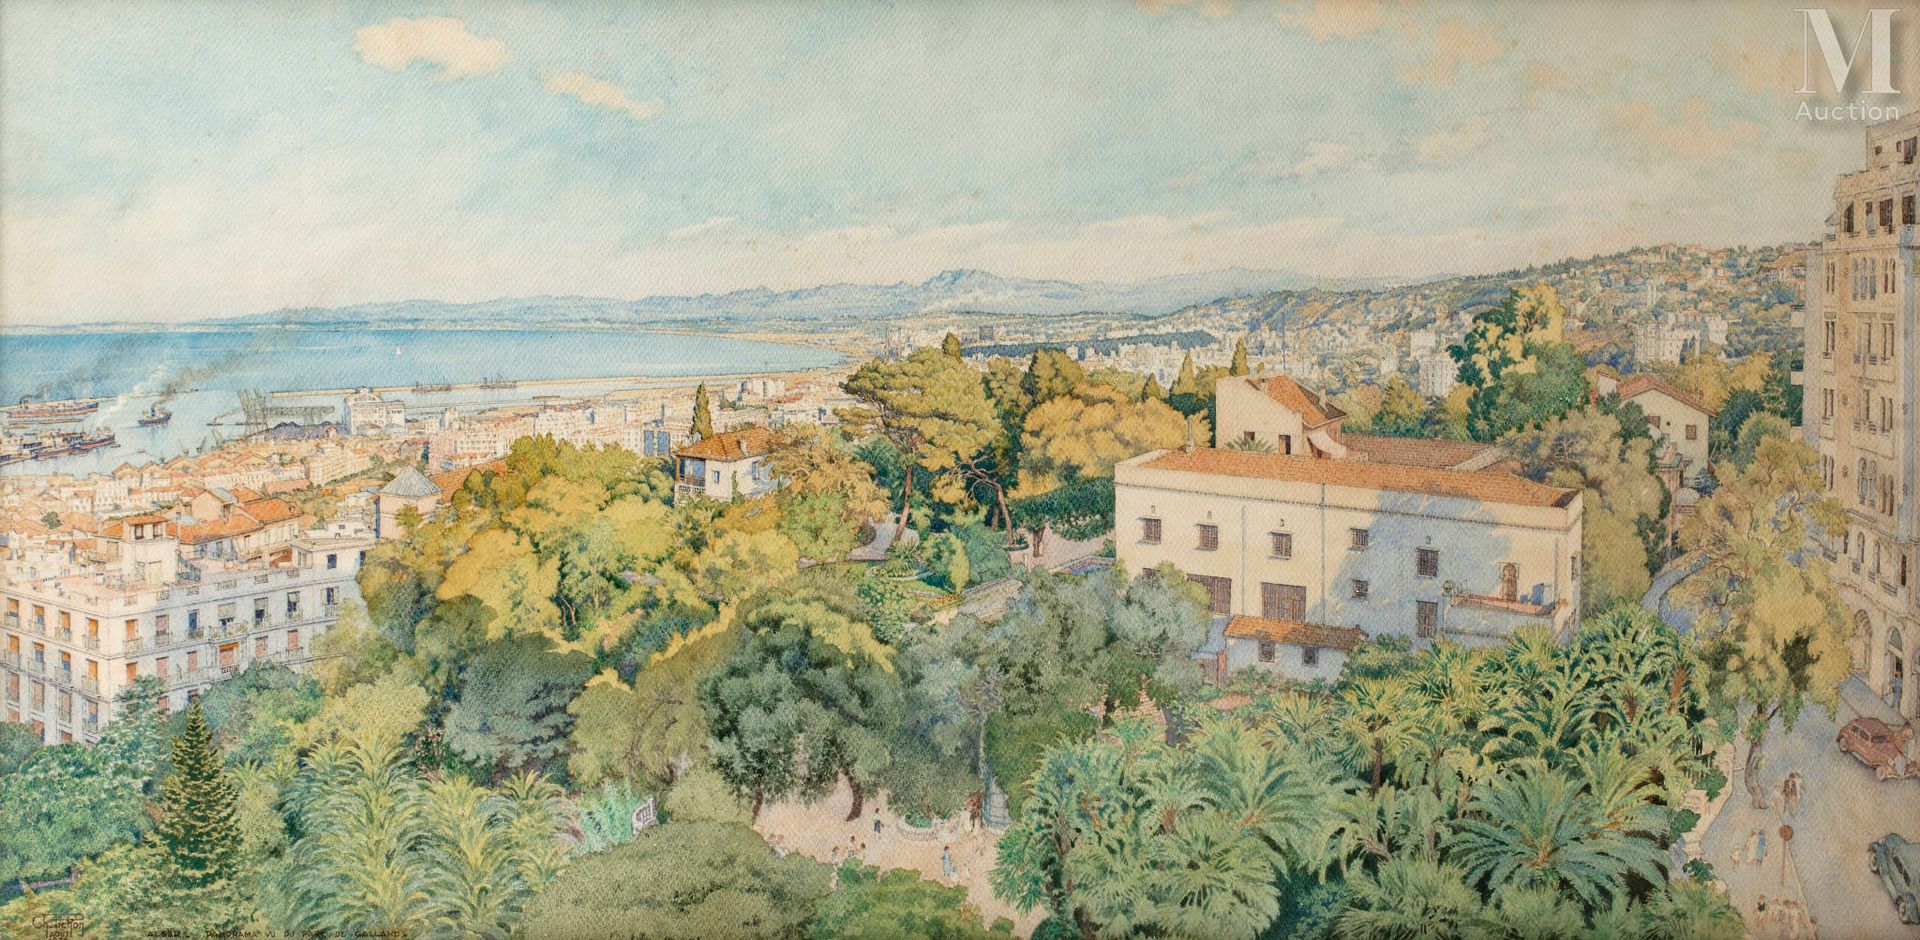 Charles PICHON (1888 - 1957) Vista panoramica di Algeri, dal parco Galland

Char&hellip;